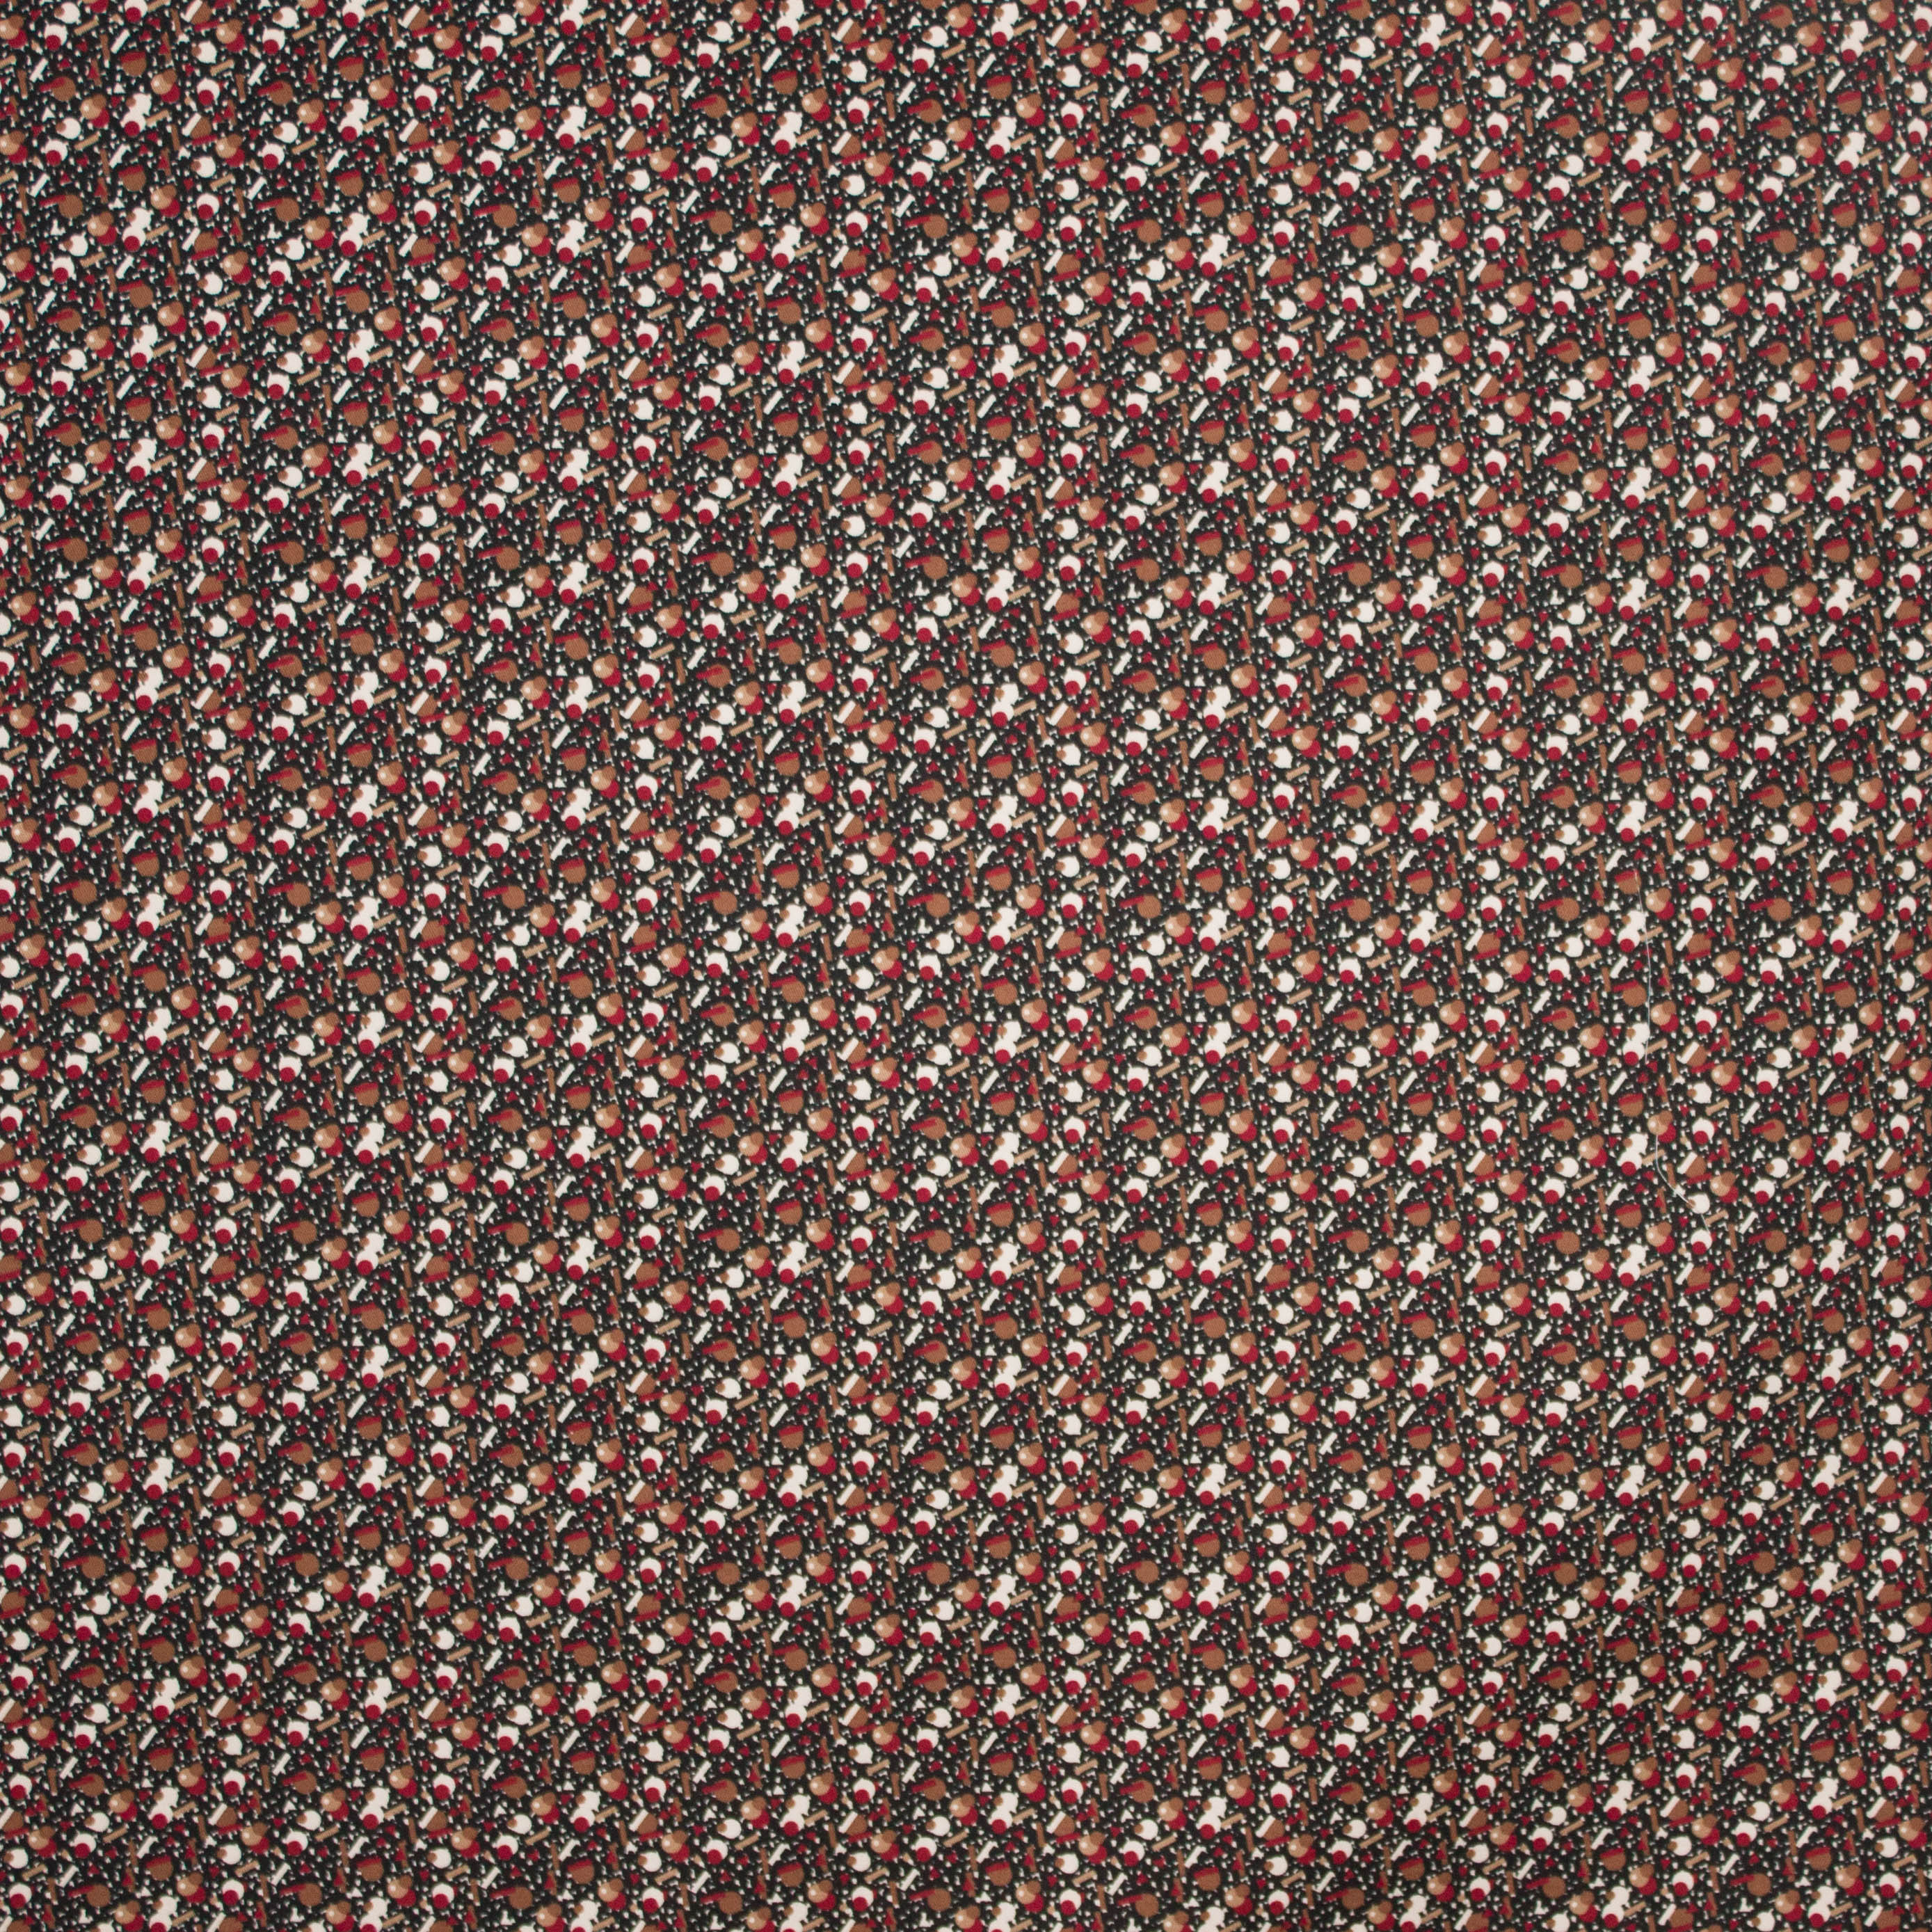 Licht elastische zwarte katoen met rood-bruine geometrische figuren